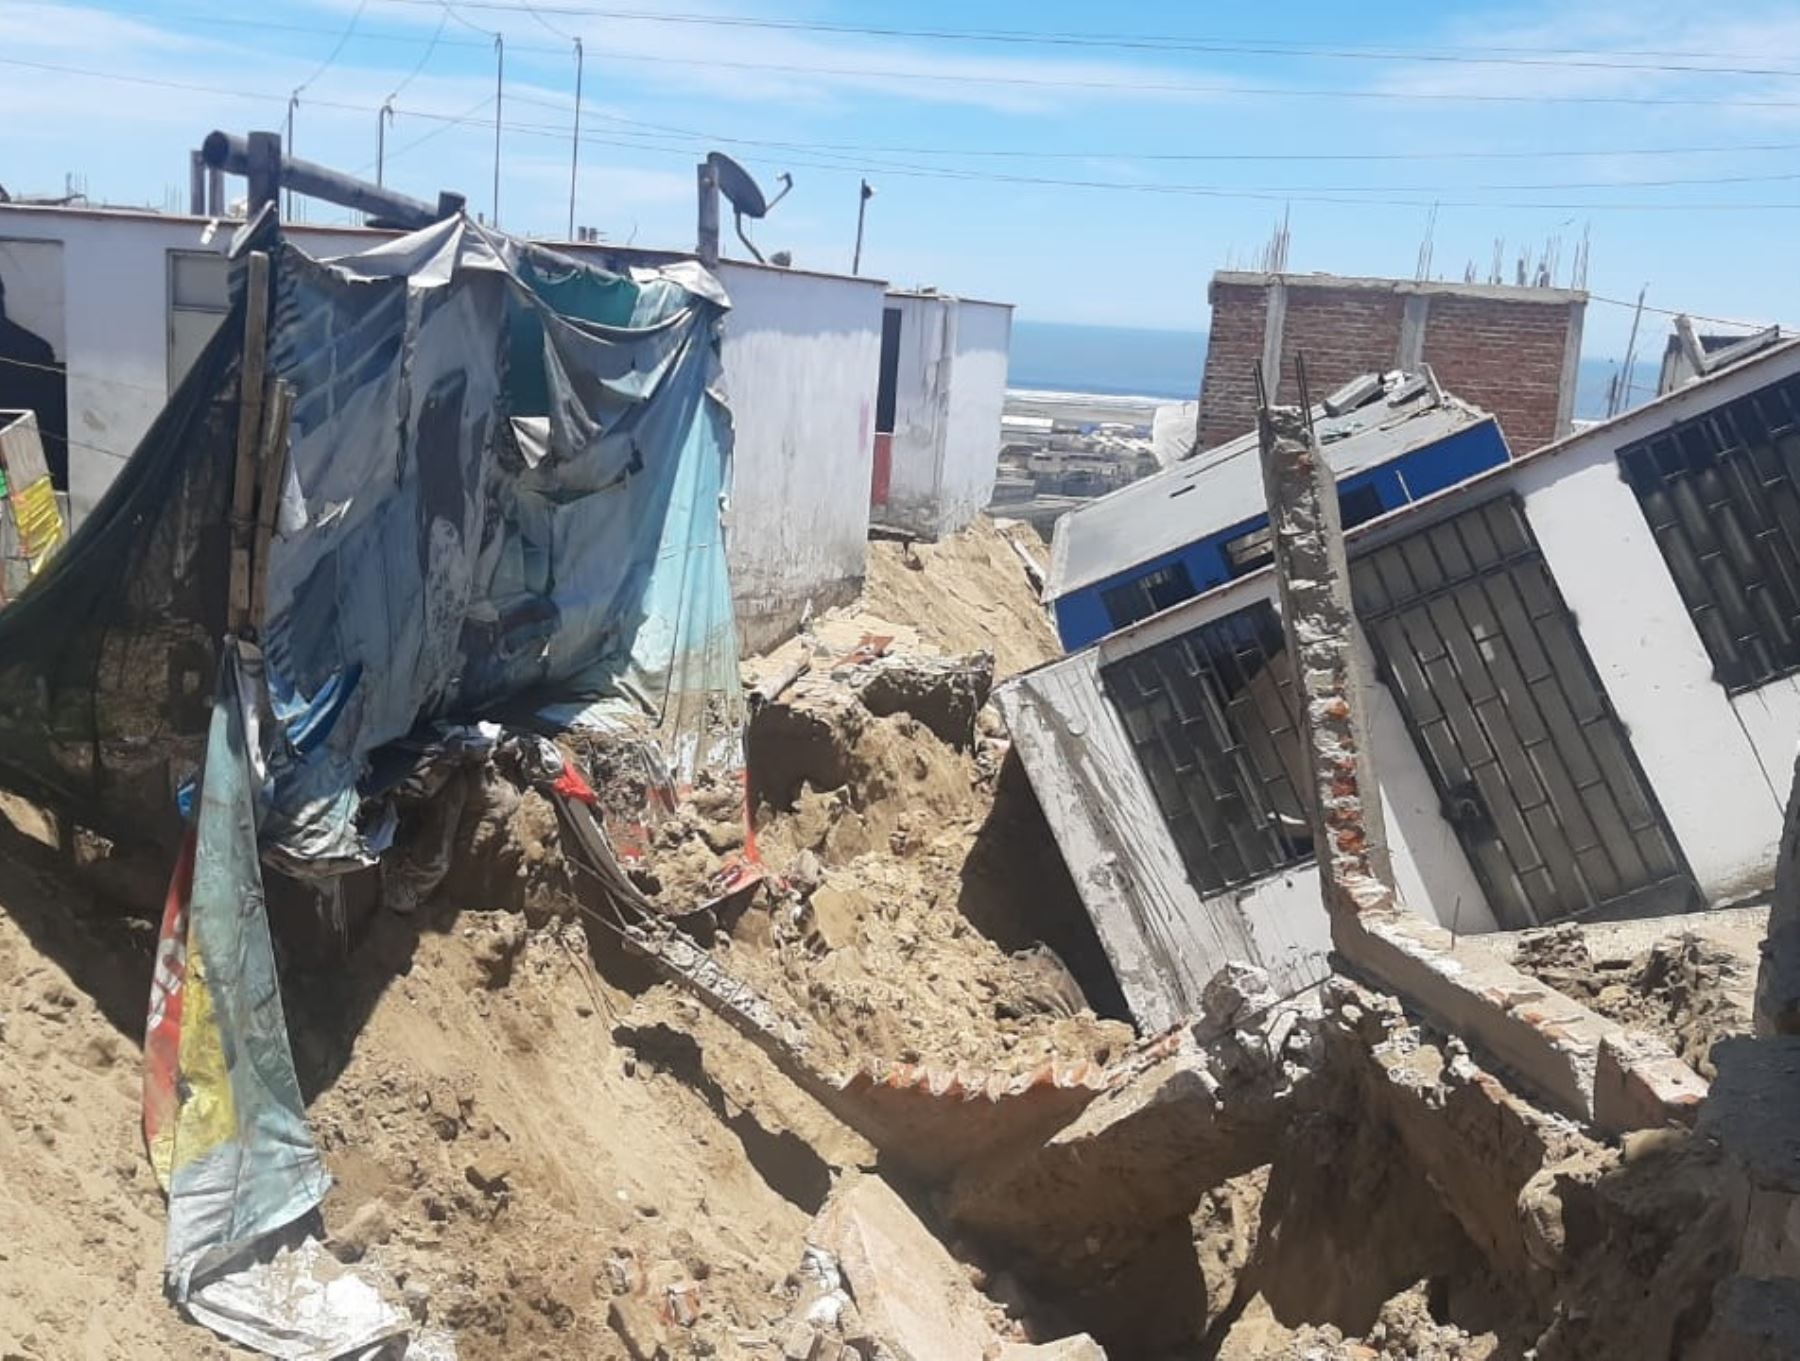 Lluvias intensas en la provincia de Trujillo causaron el colapso de varias viviendas en el distrito de Salaverry. Foto: Luis Puell